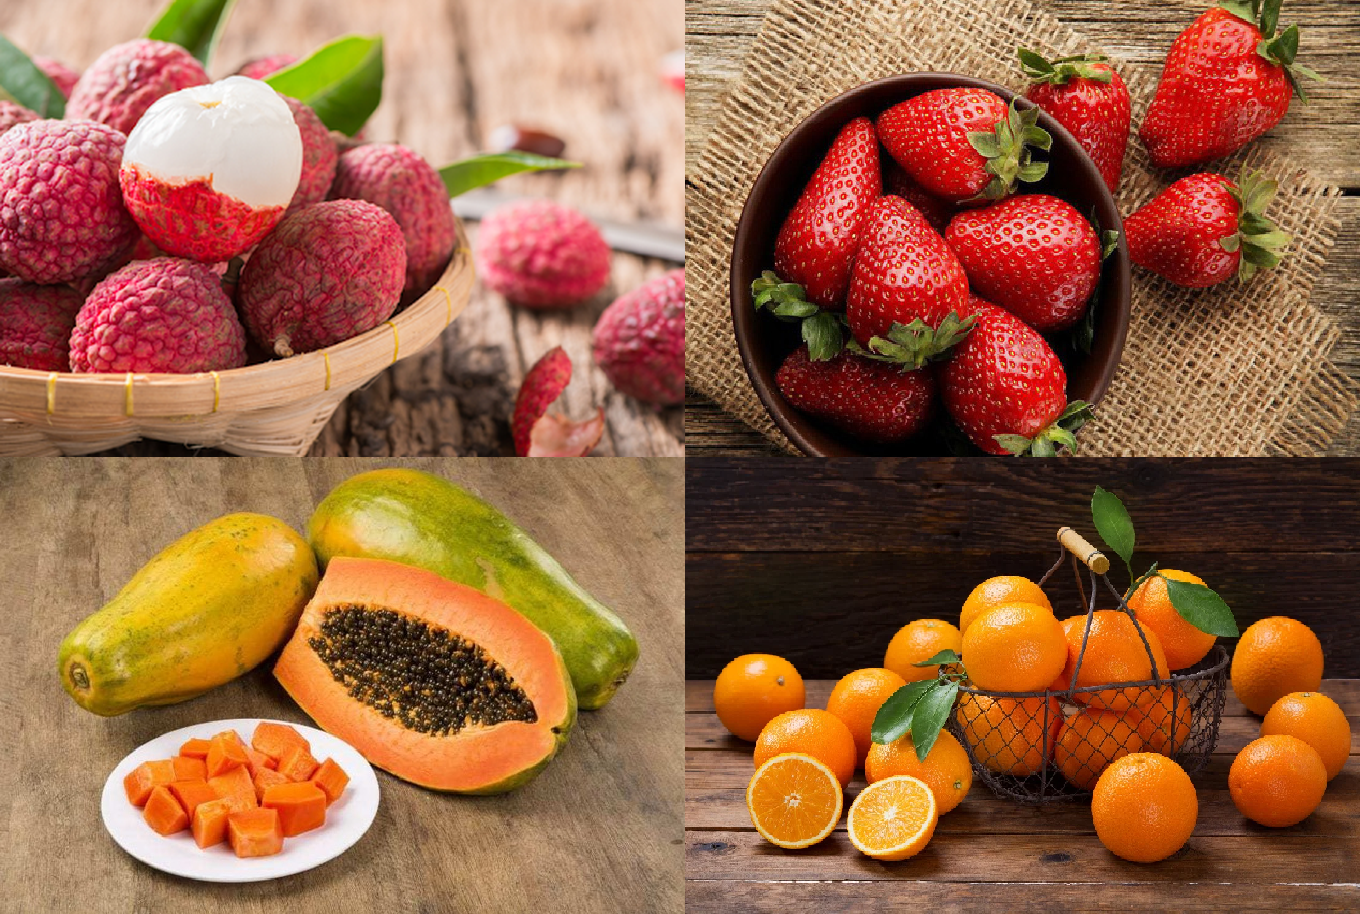 Các loại quả giàu vitamin C như: vải thiều, dâu tây, đu đủ và cam